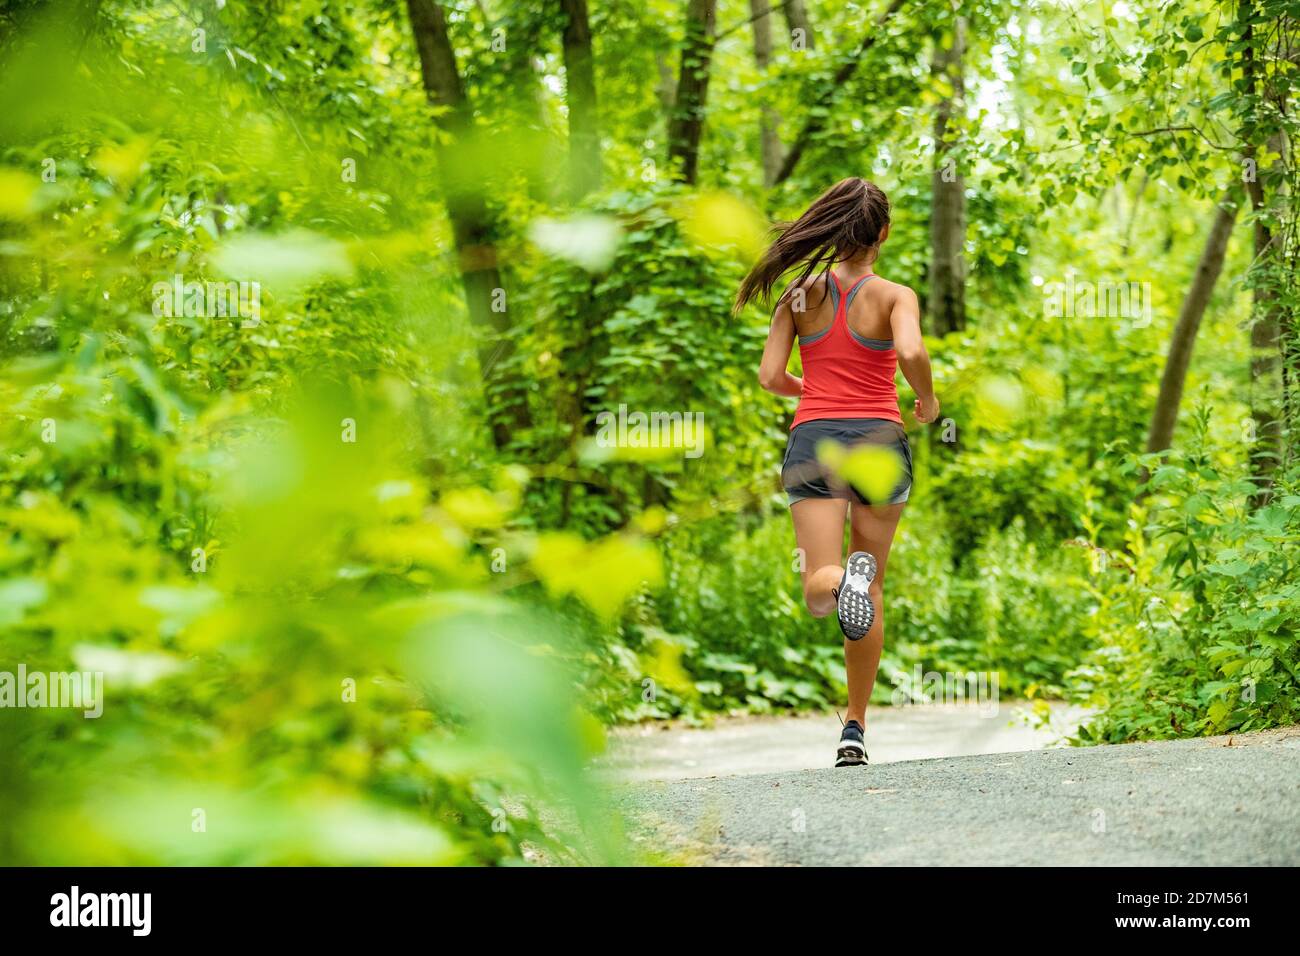 Sano attivo stile di vita donna corridore jogging nel percorso forestale atleta atleta allenamento all'aperto in natura verde. Mettere in forma la persona che si sta allenando. Foto Stock